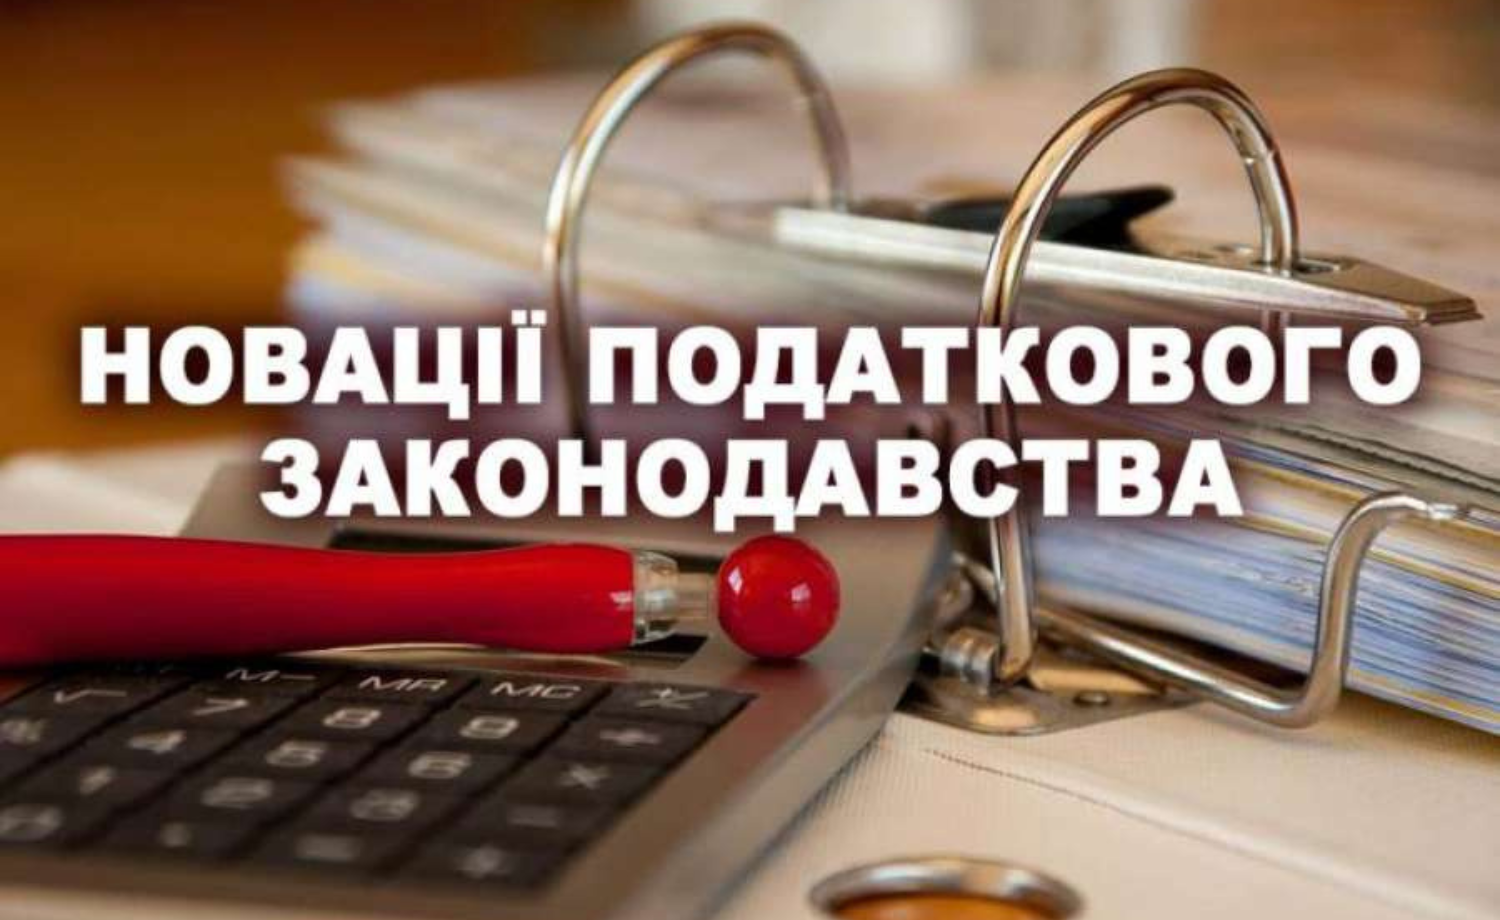 Закон України № 3603: новації податкового законодавства